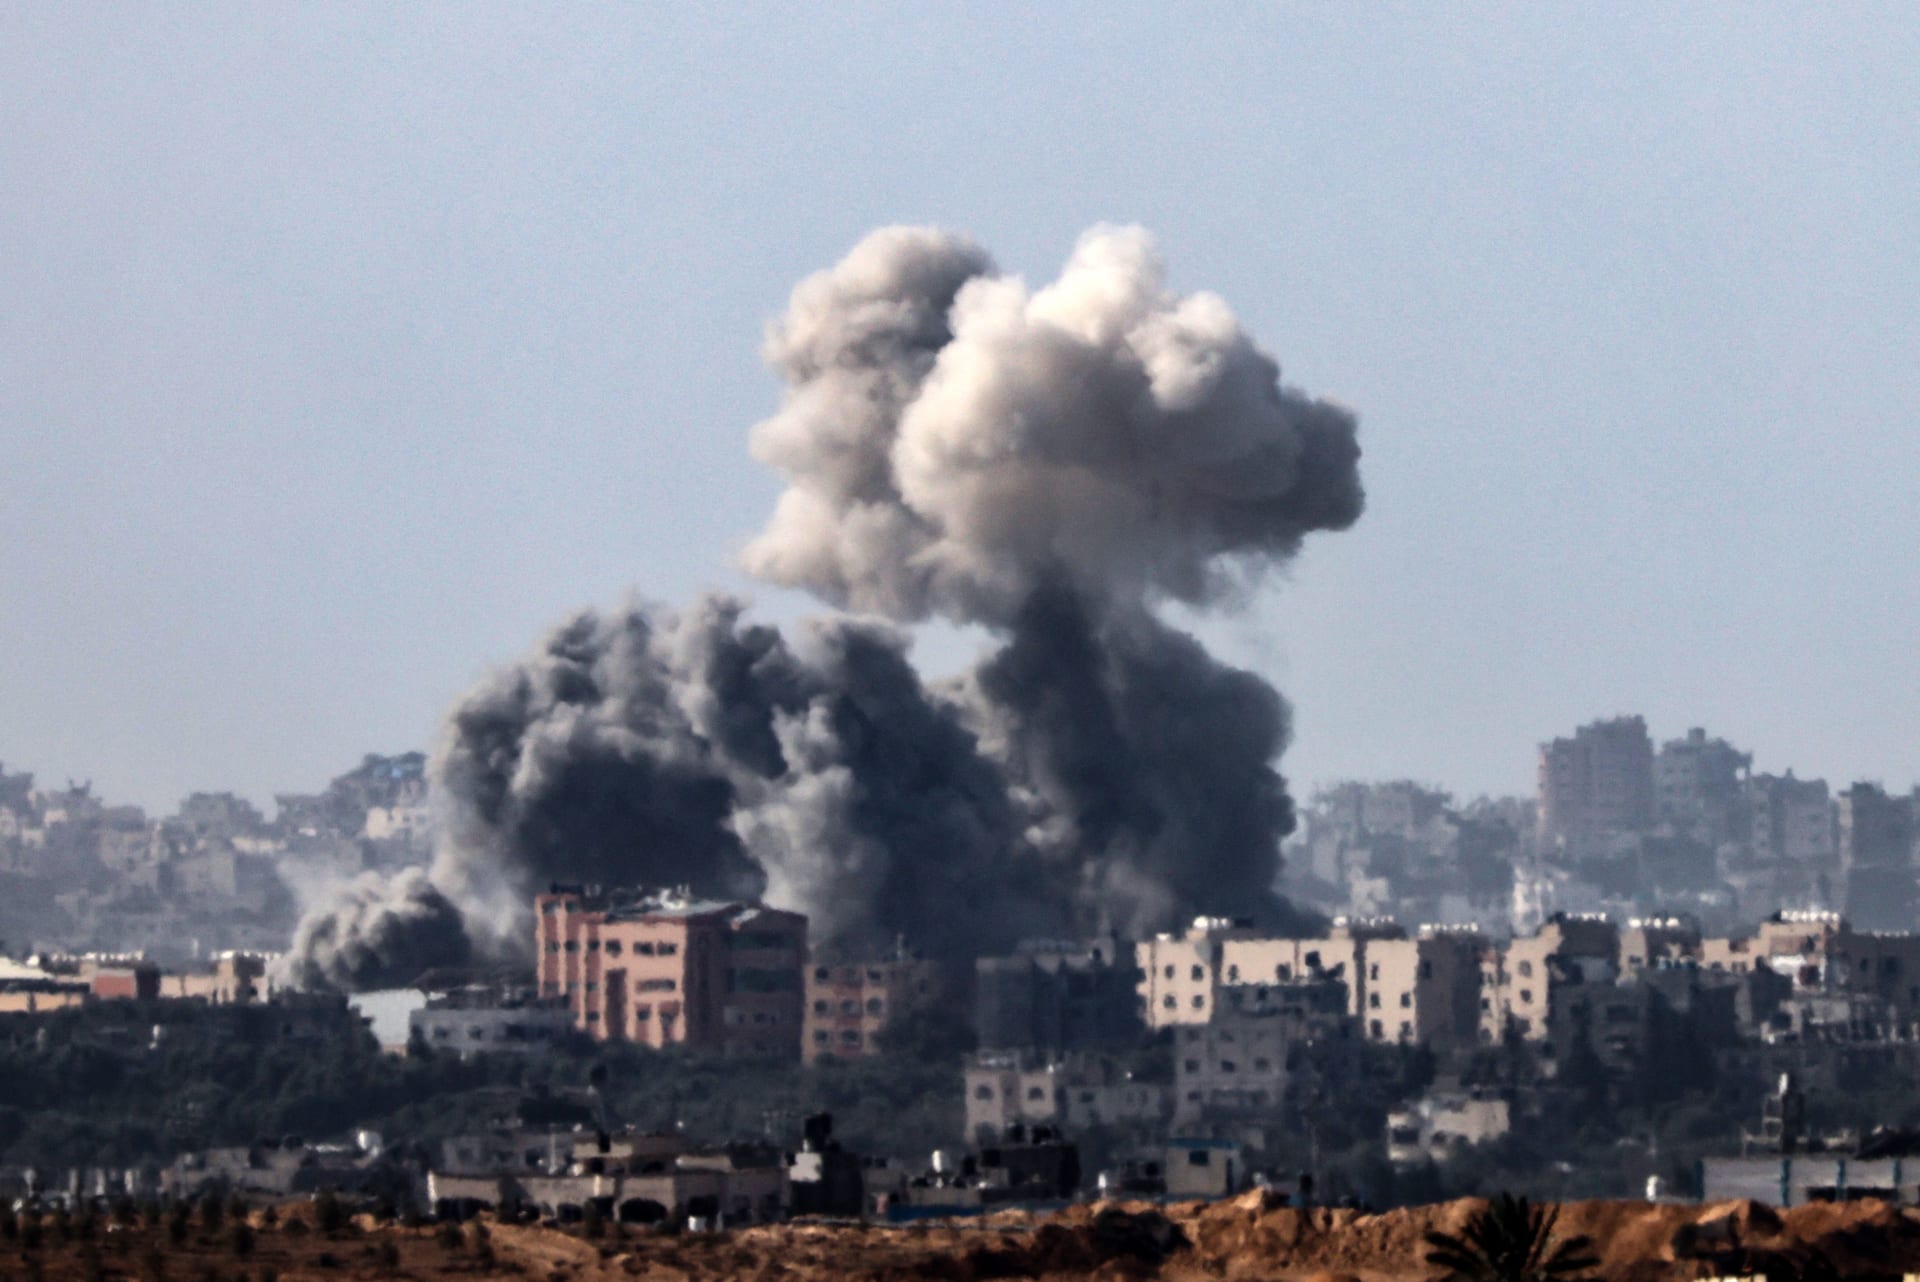 مفوض حقوق الإنسان من الأردن: لا بد أن يكون هناك تحقيق دولي مستقل حول "العنف في غزة"